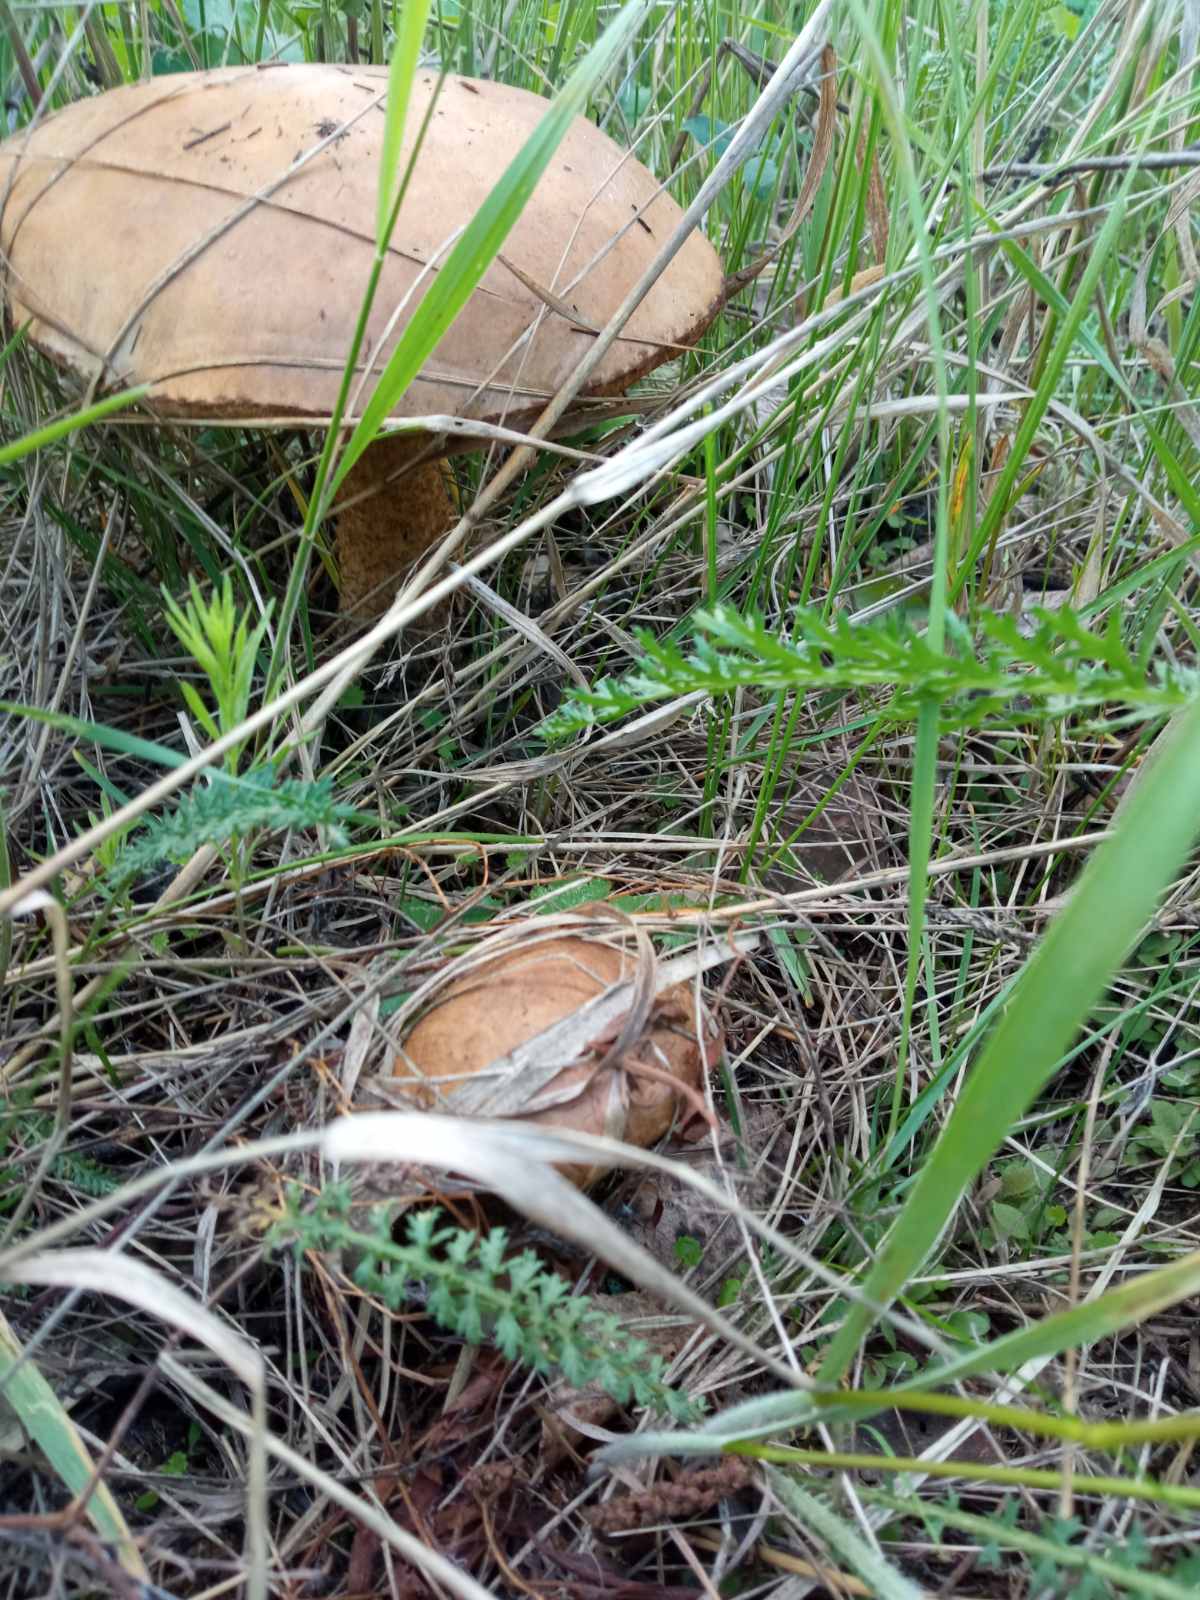 Главное в сборе грибов — просматривать хорошо полянки и заглядывать в листву